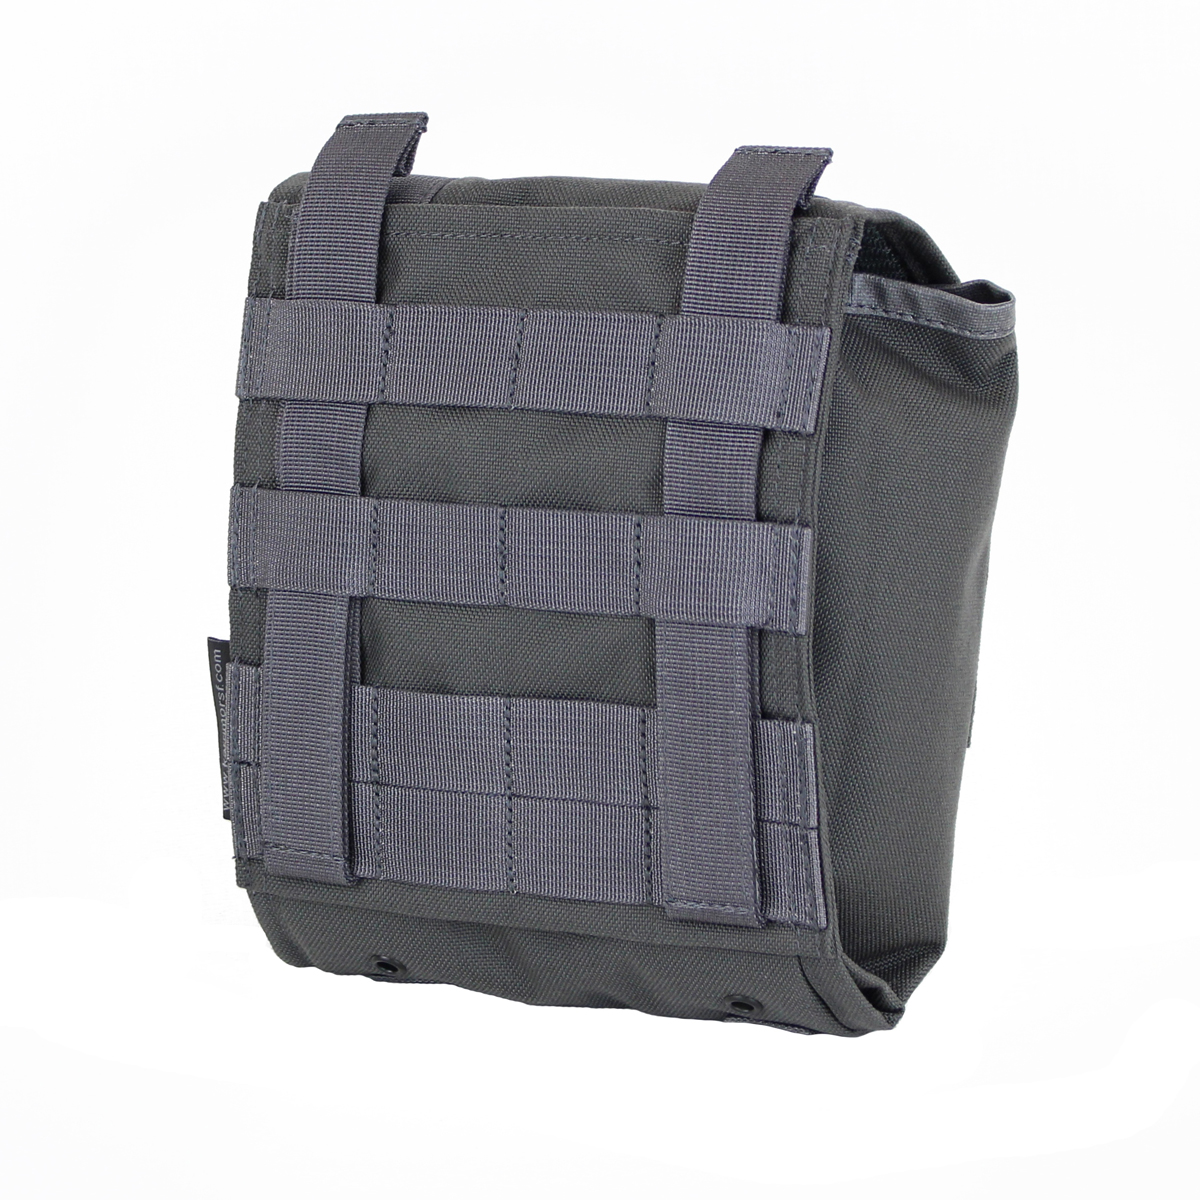 Kupite vrhunsko vojaško večnamensko MOLLE torbico Karrimor SF Predator Omni QR. Modularna torbica z visoko vzdržljivostjo in odpornostjo na vremenske vplive. Idealna za vojaško in outdoor uporabo. Uživajte v vrhunski kakovosti in funkcionalnosti.